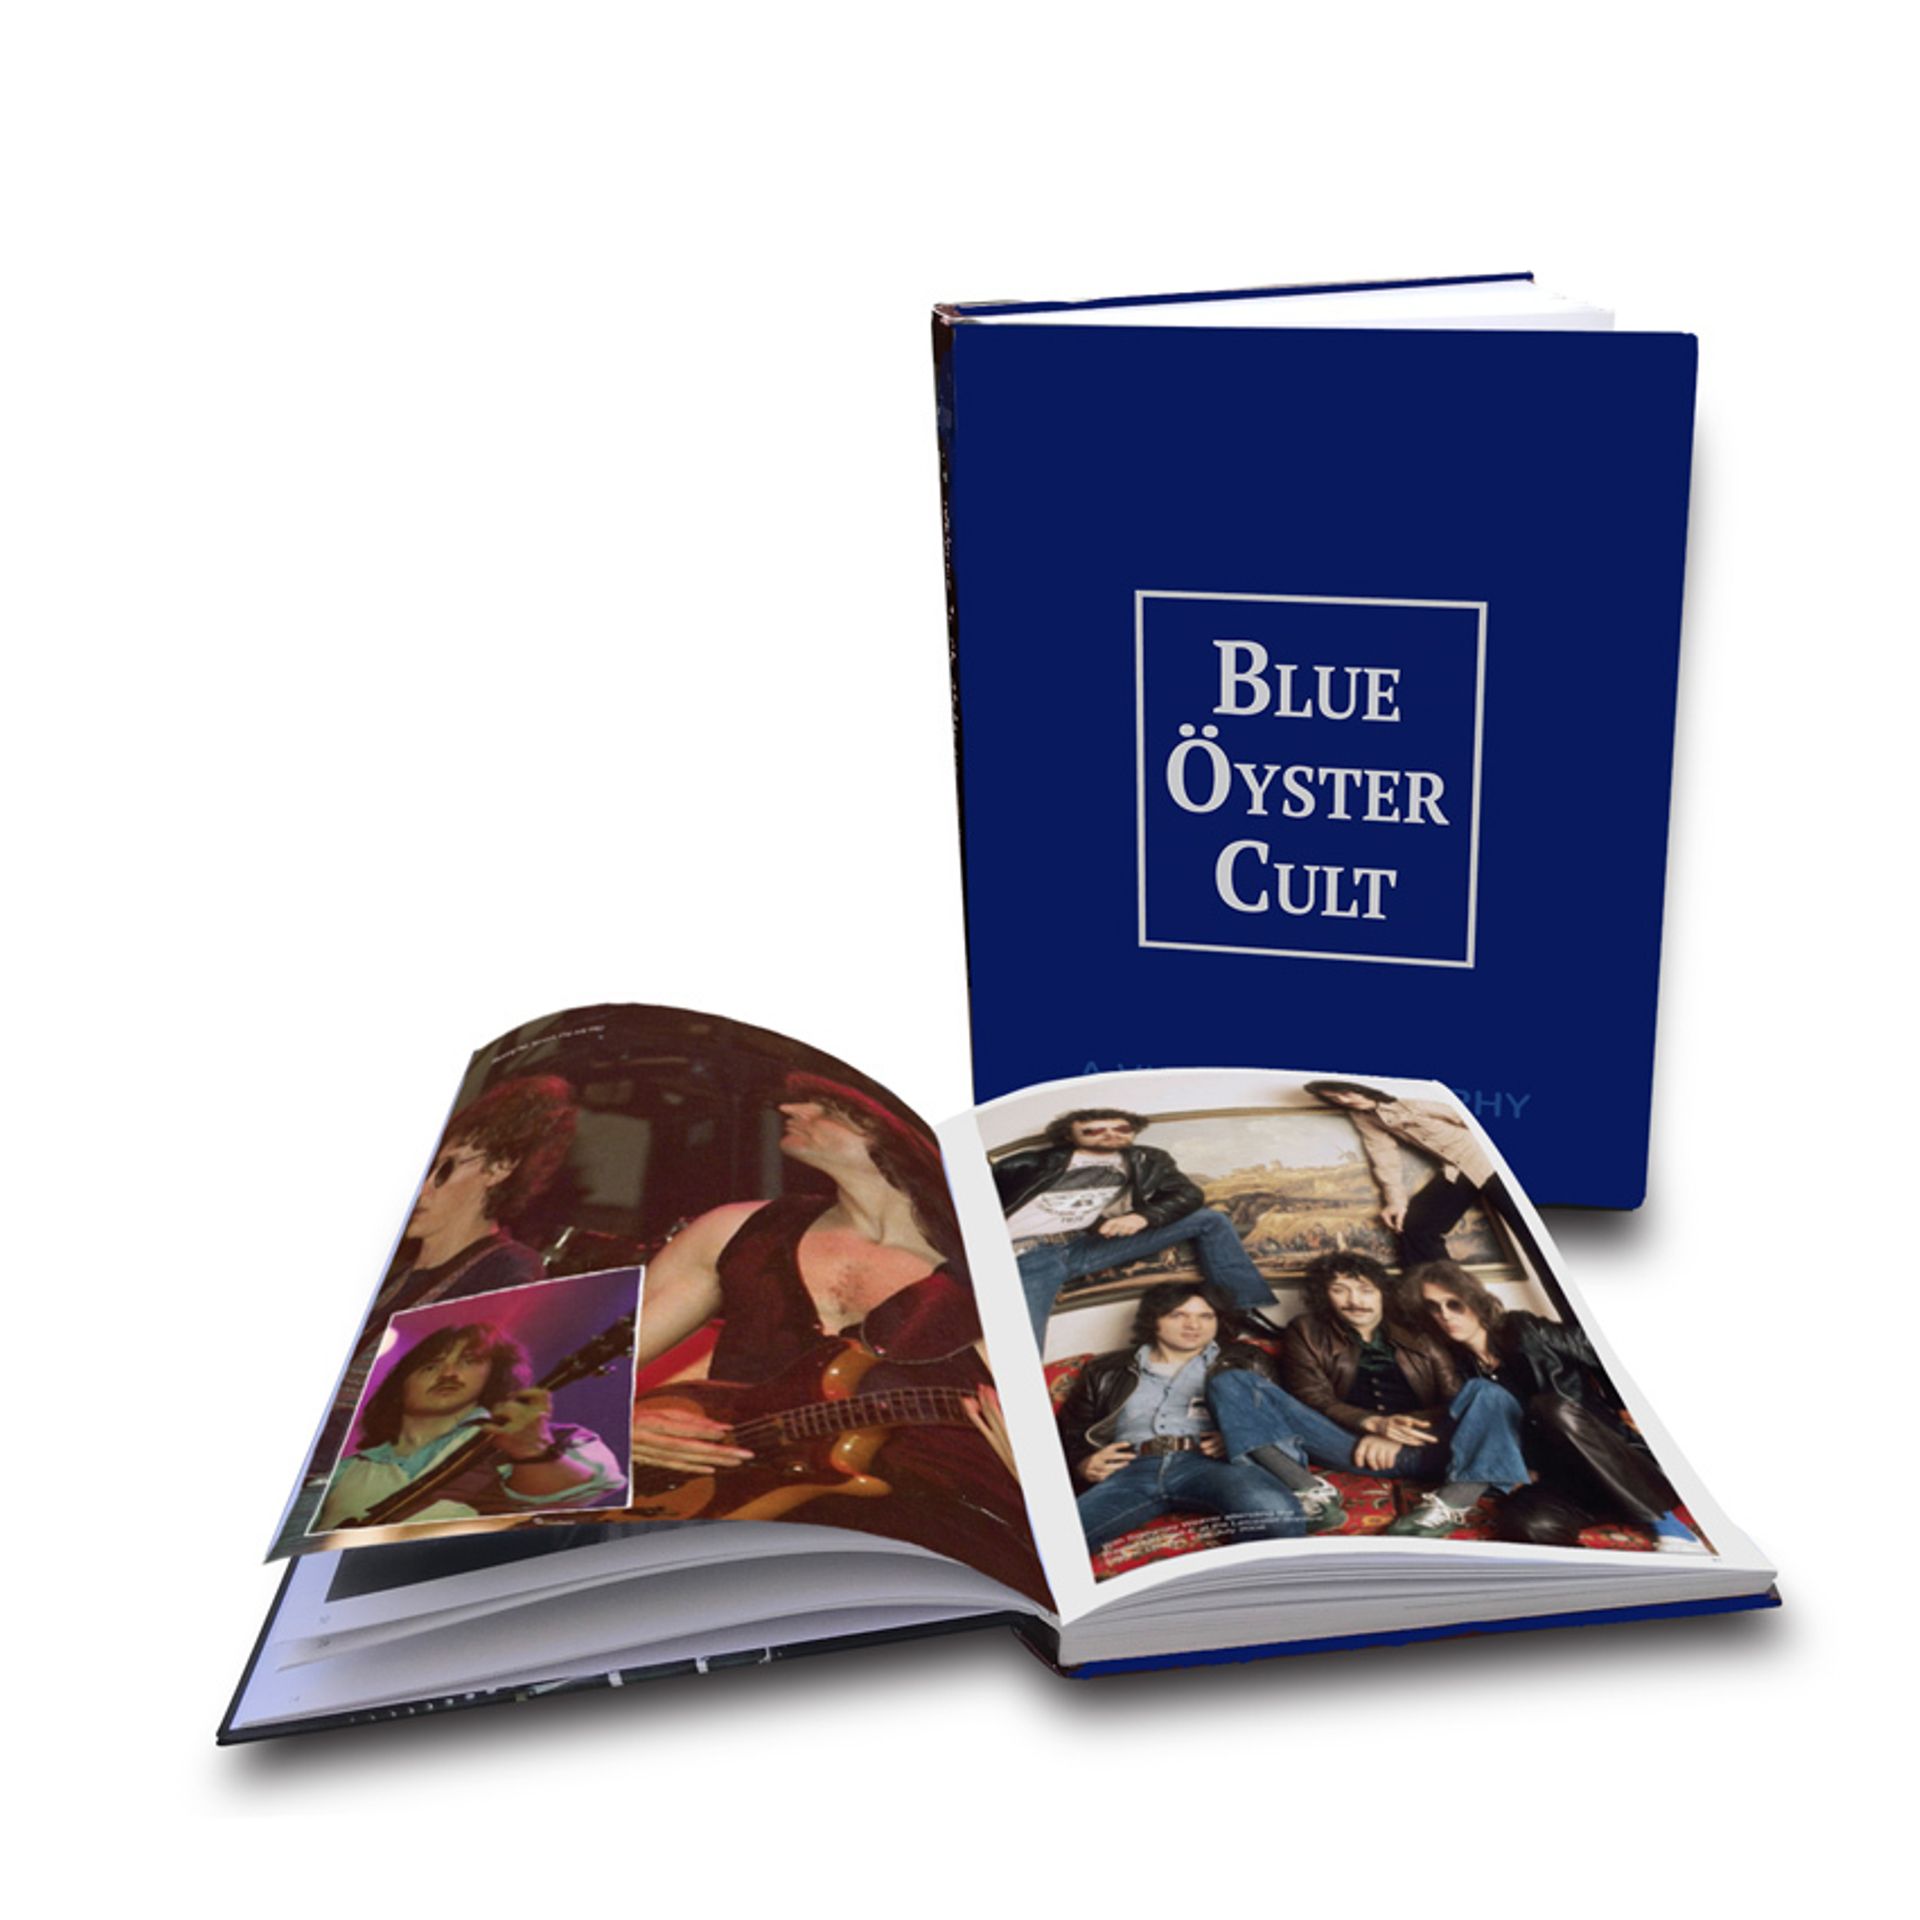 Une biographie Blue Öyster Cult